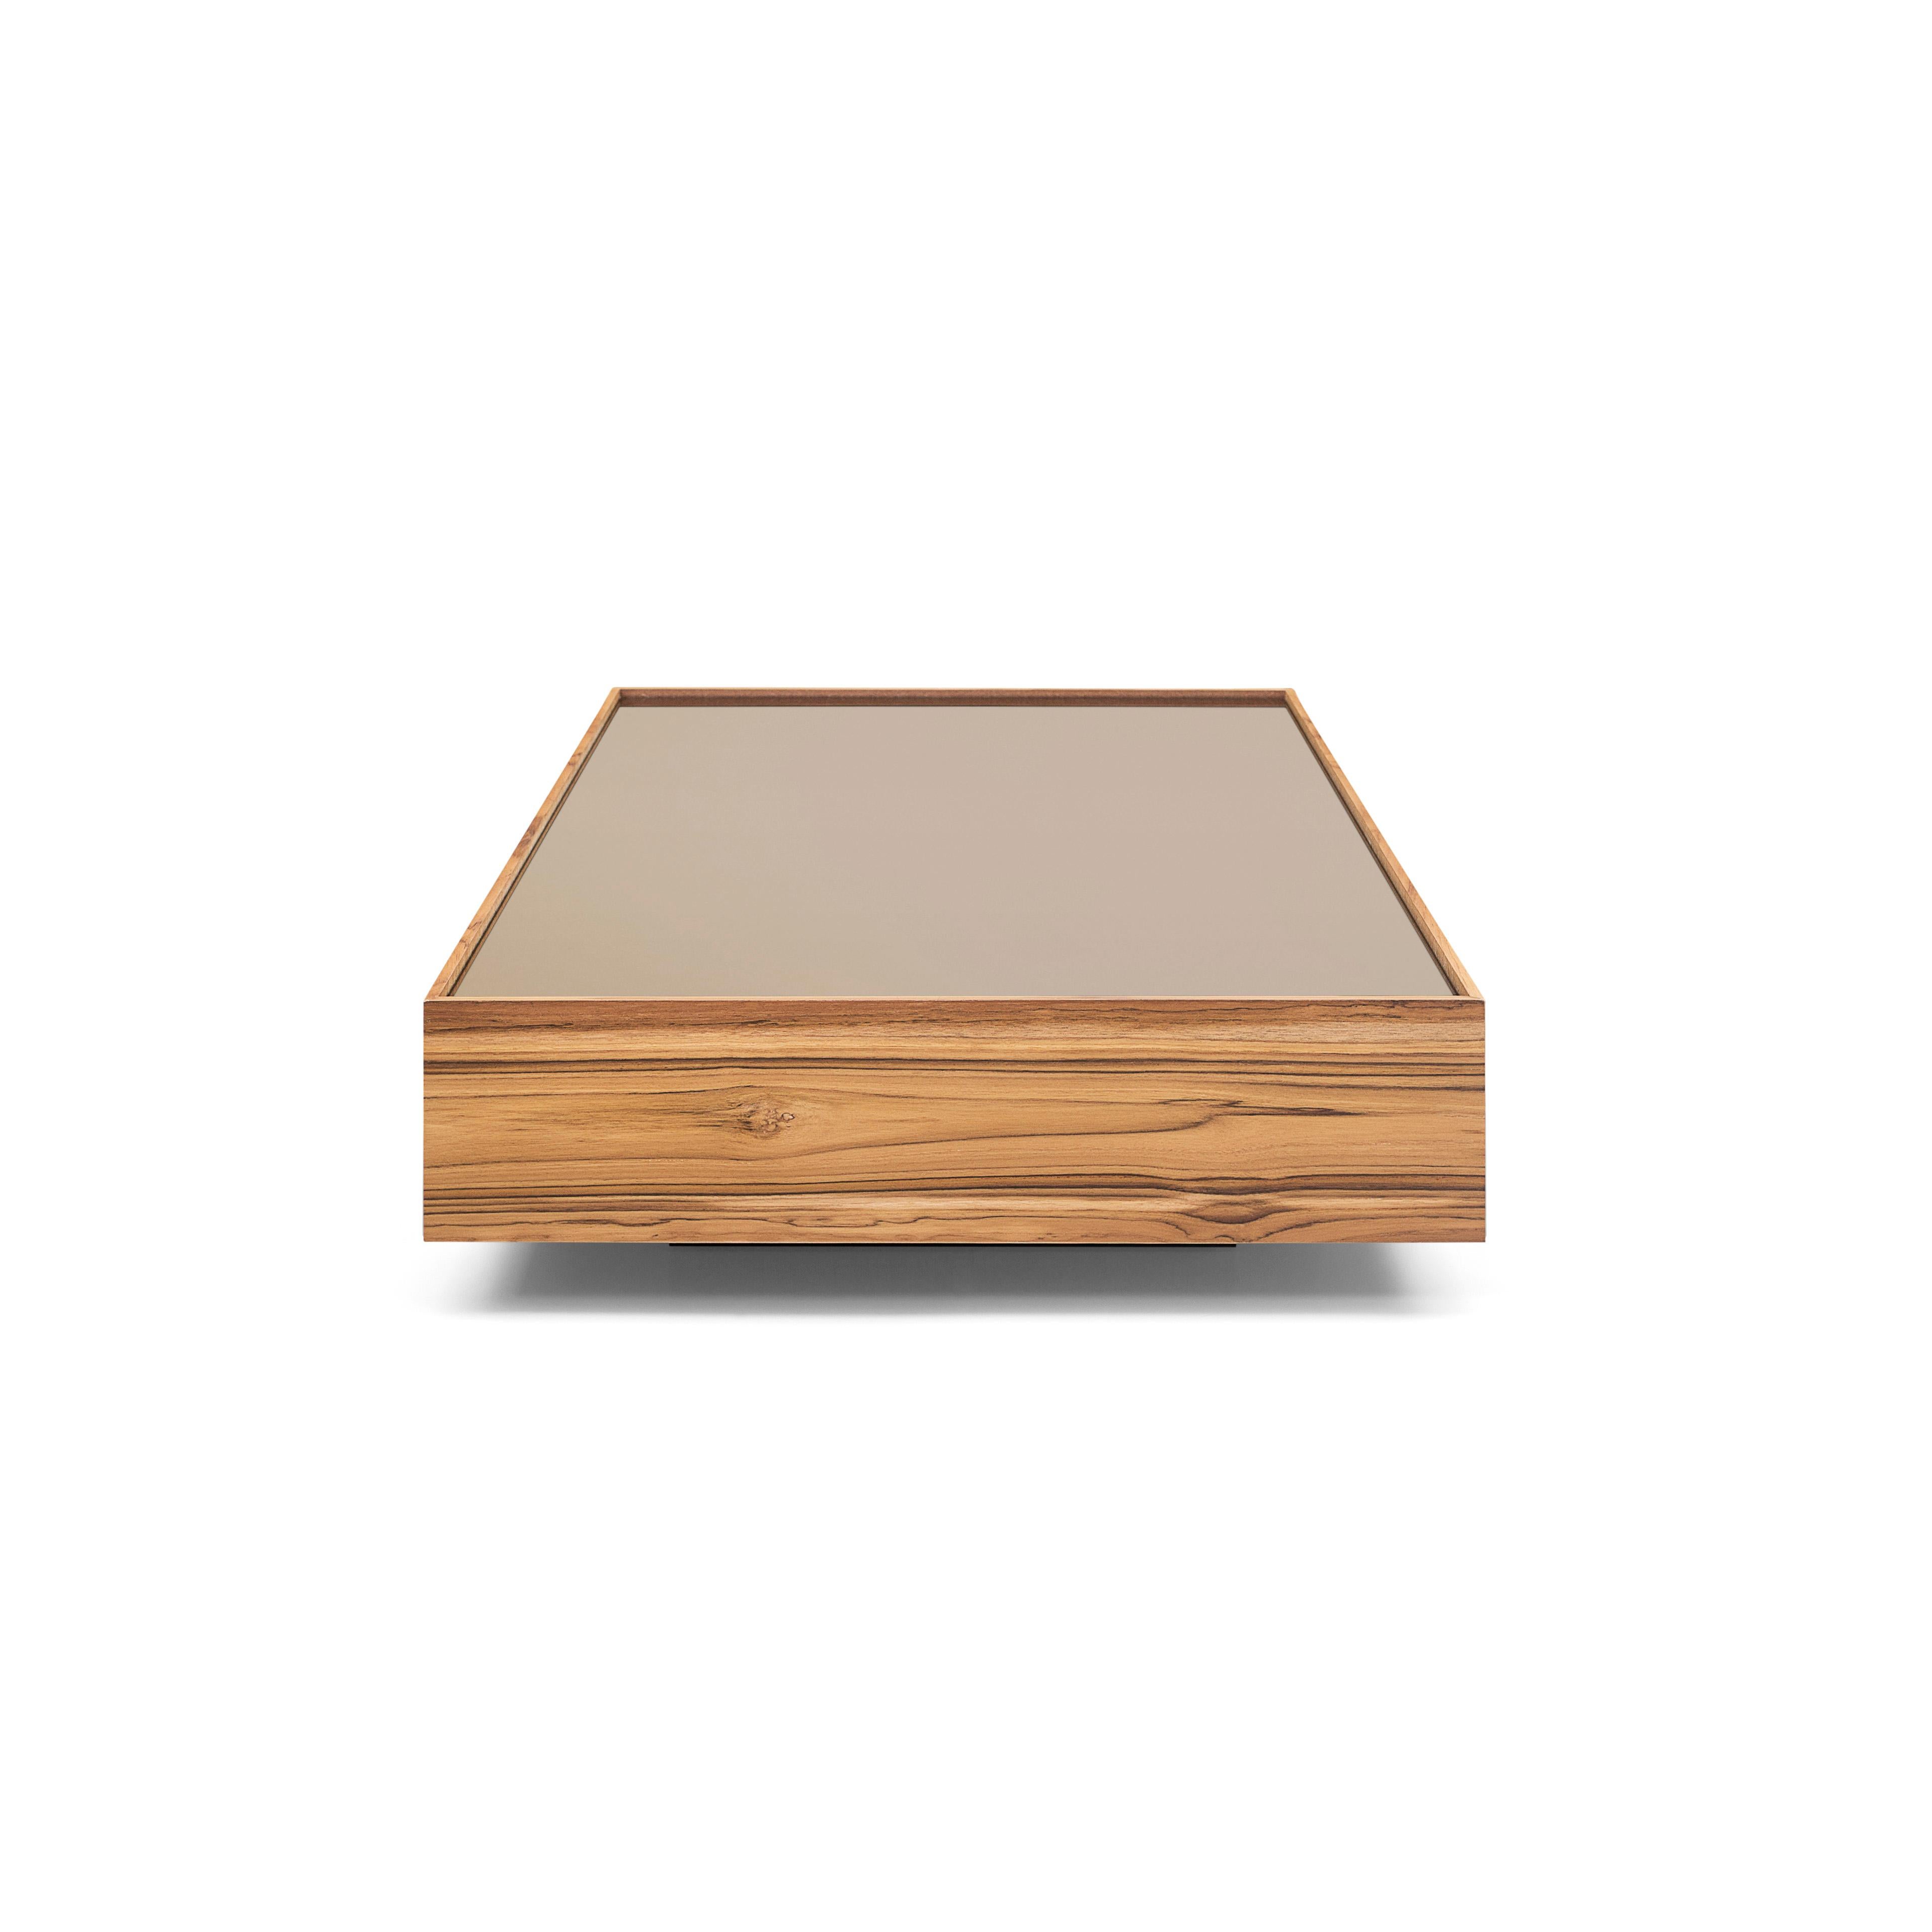 La mesa de centro rectangular Arco, con una hermosa estructura de madera de teca combinada con un elegante tablero de cristal bronceado de gran estilo, es otro complemento Uultis perfecto para cualquier hogar. Nuestro equipo brasileño de Uultis